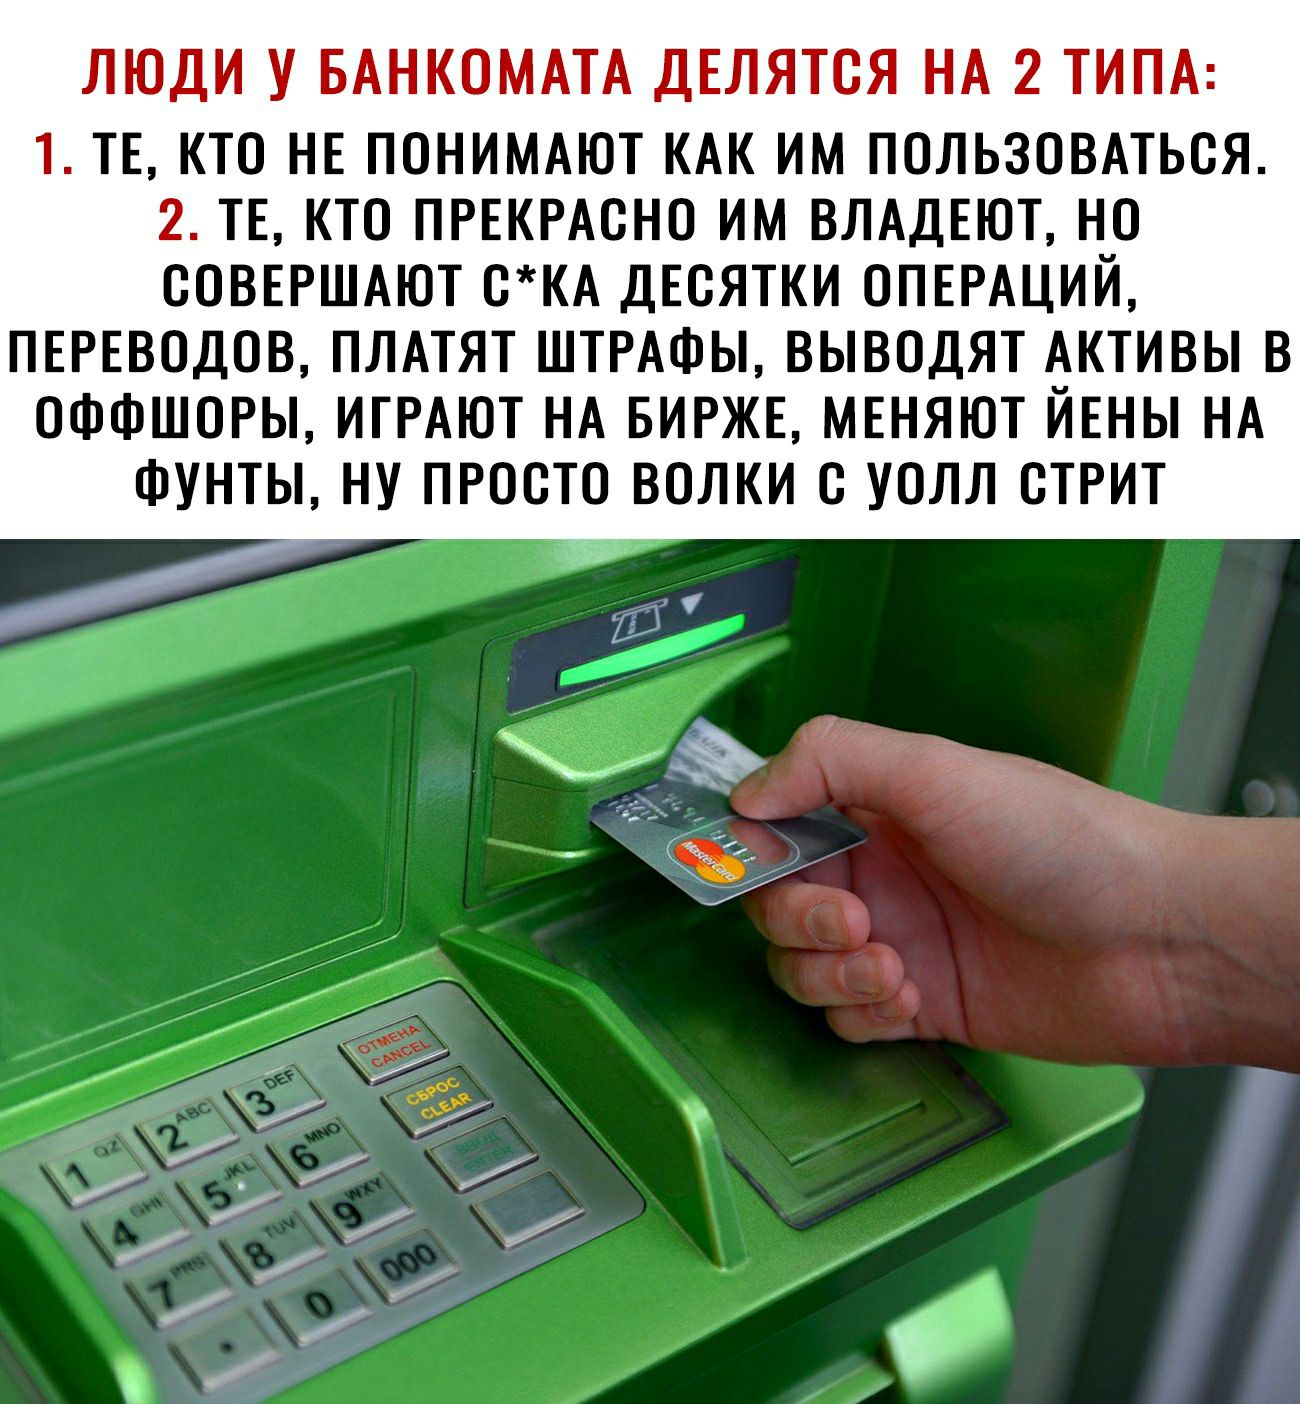 Как внести карту в банкомат